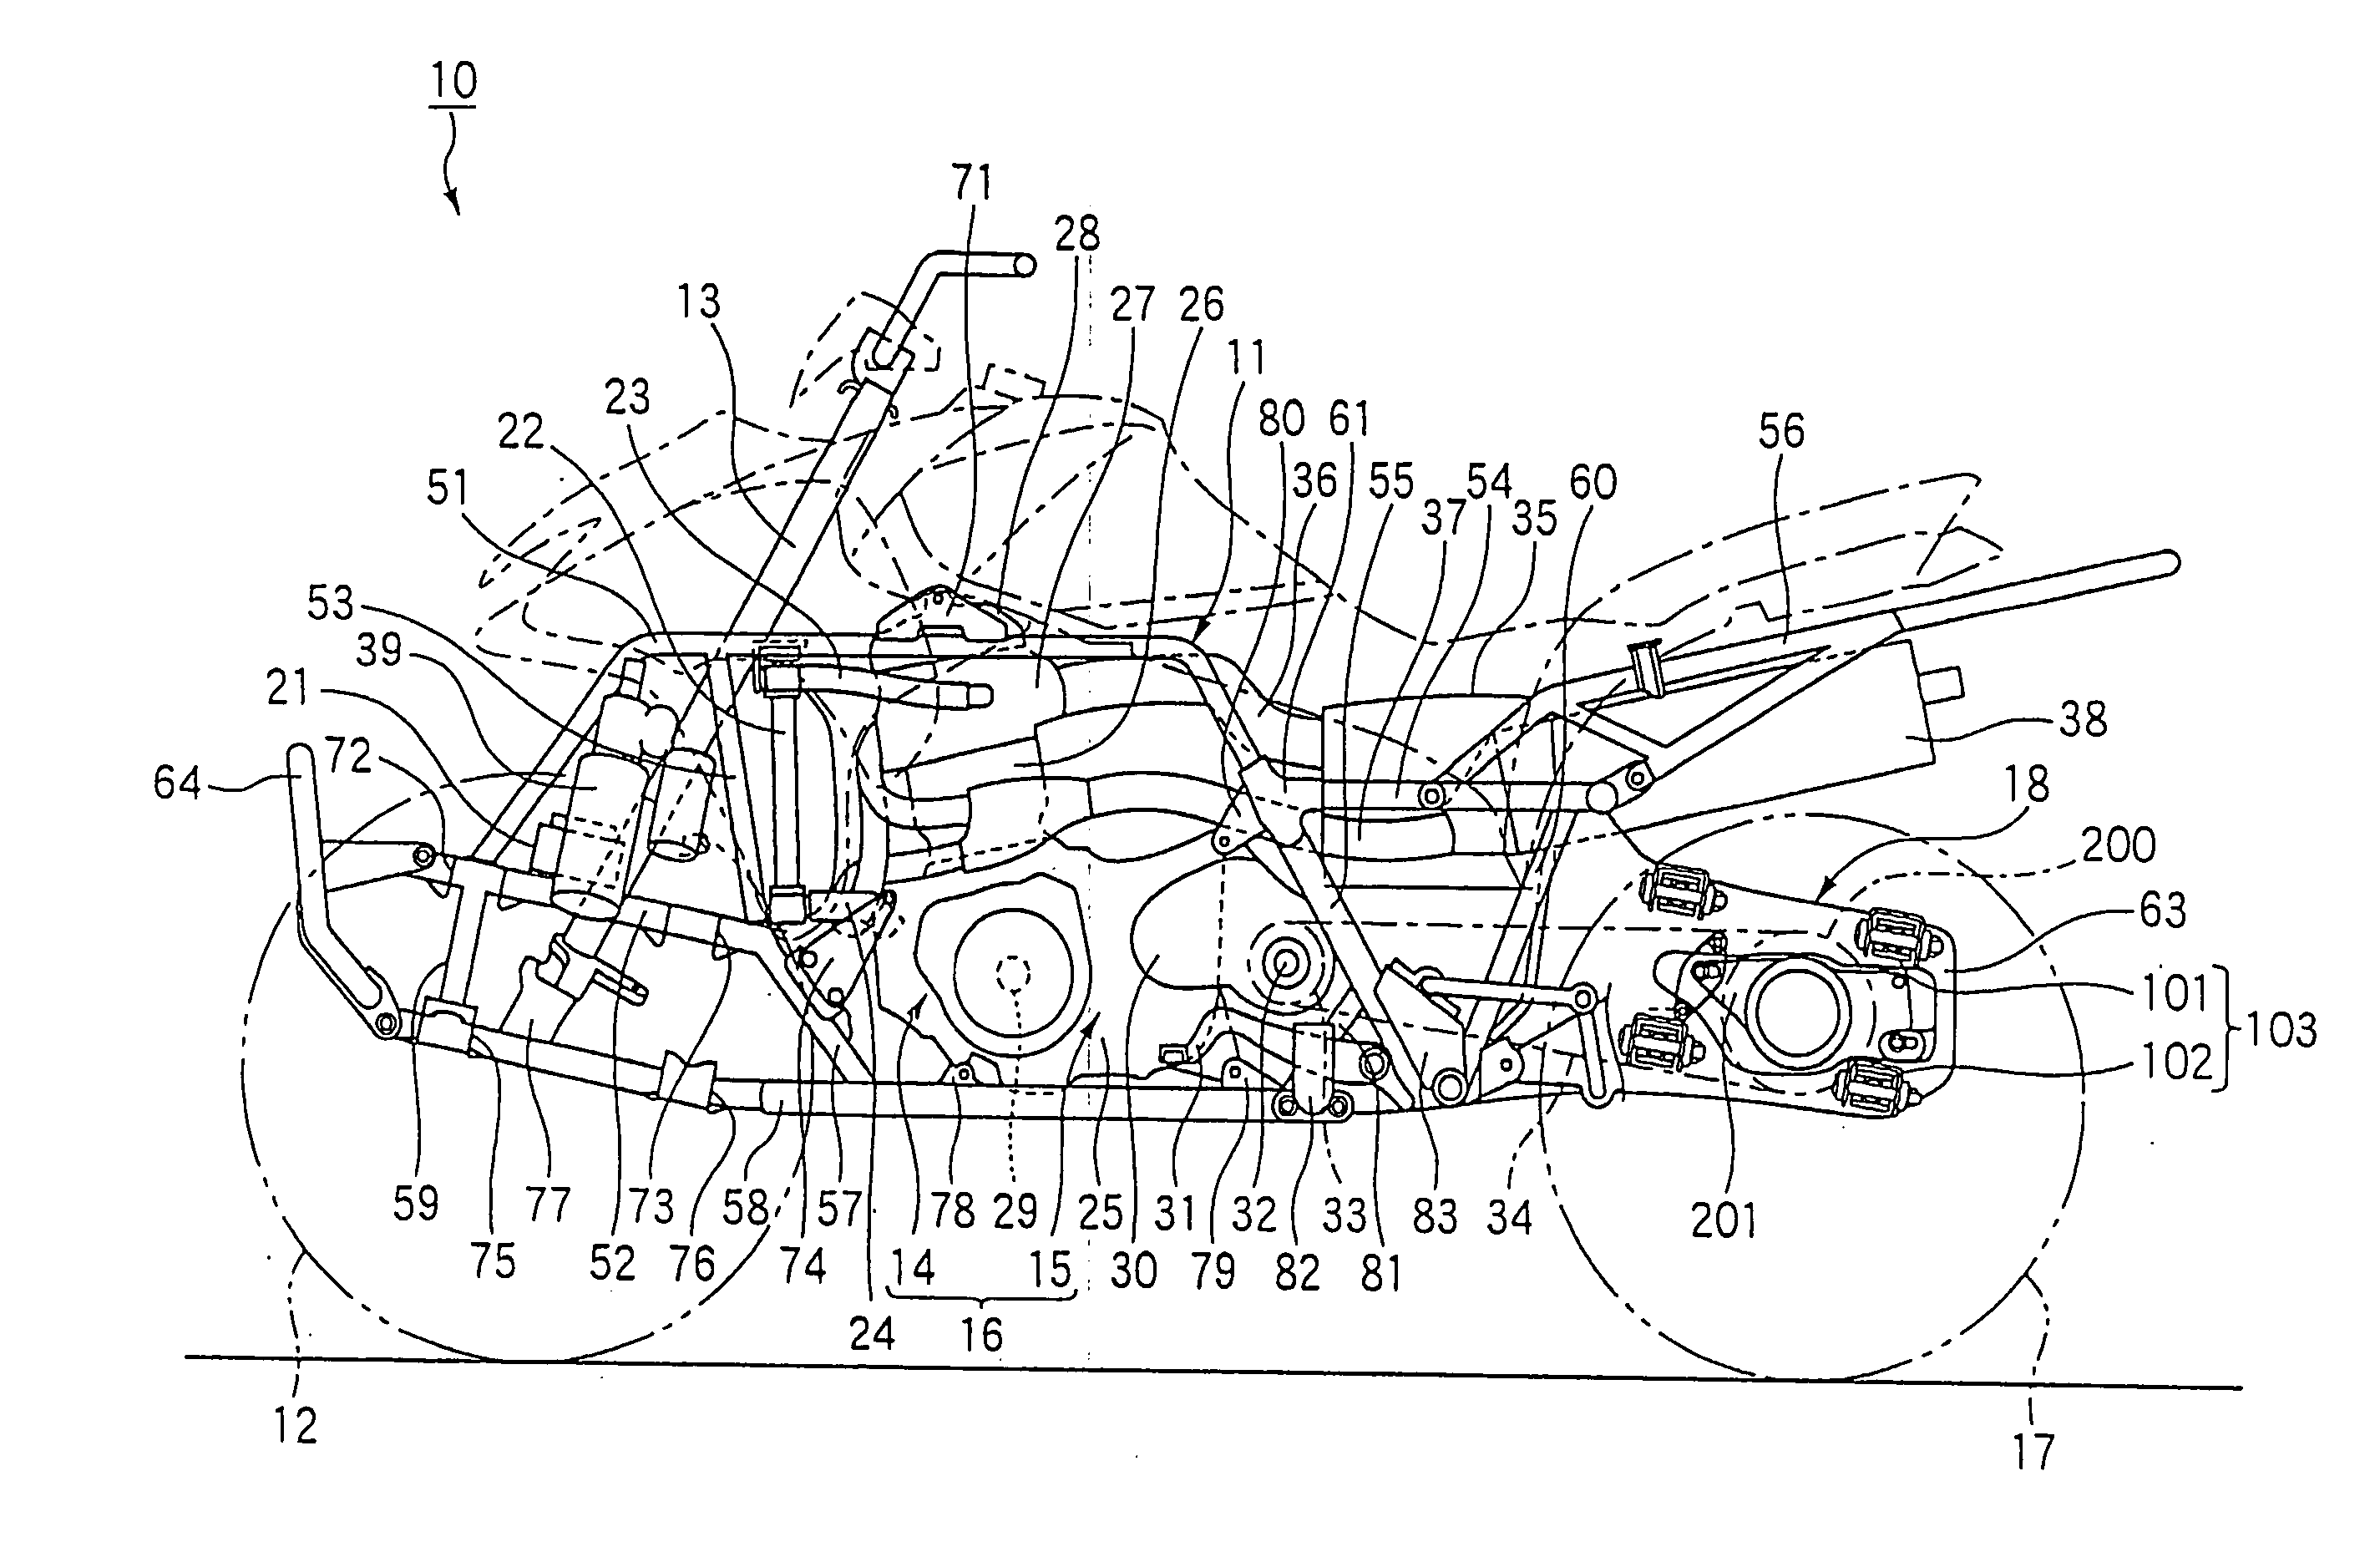 Cushion mounting structure of saddle-ride vehicle